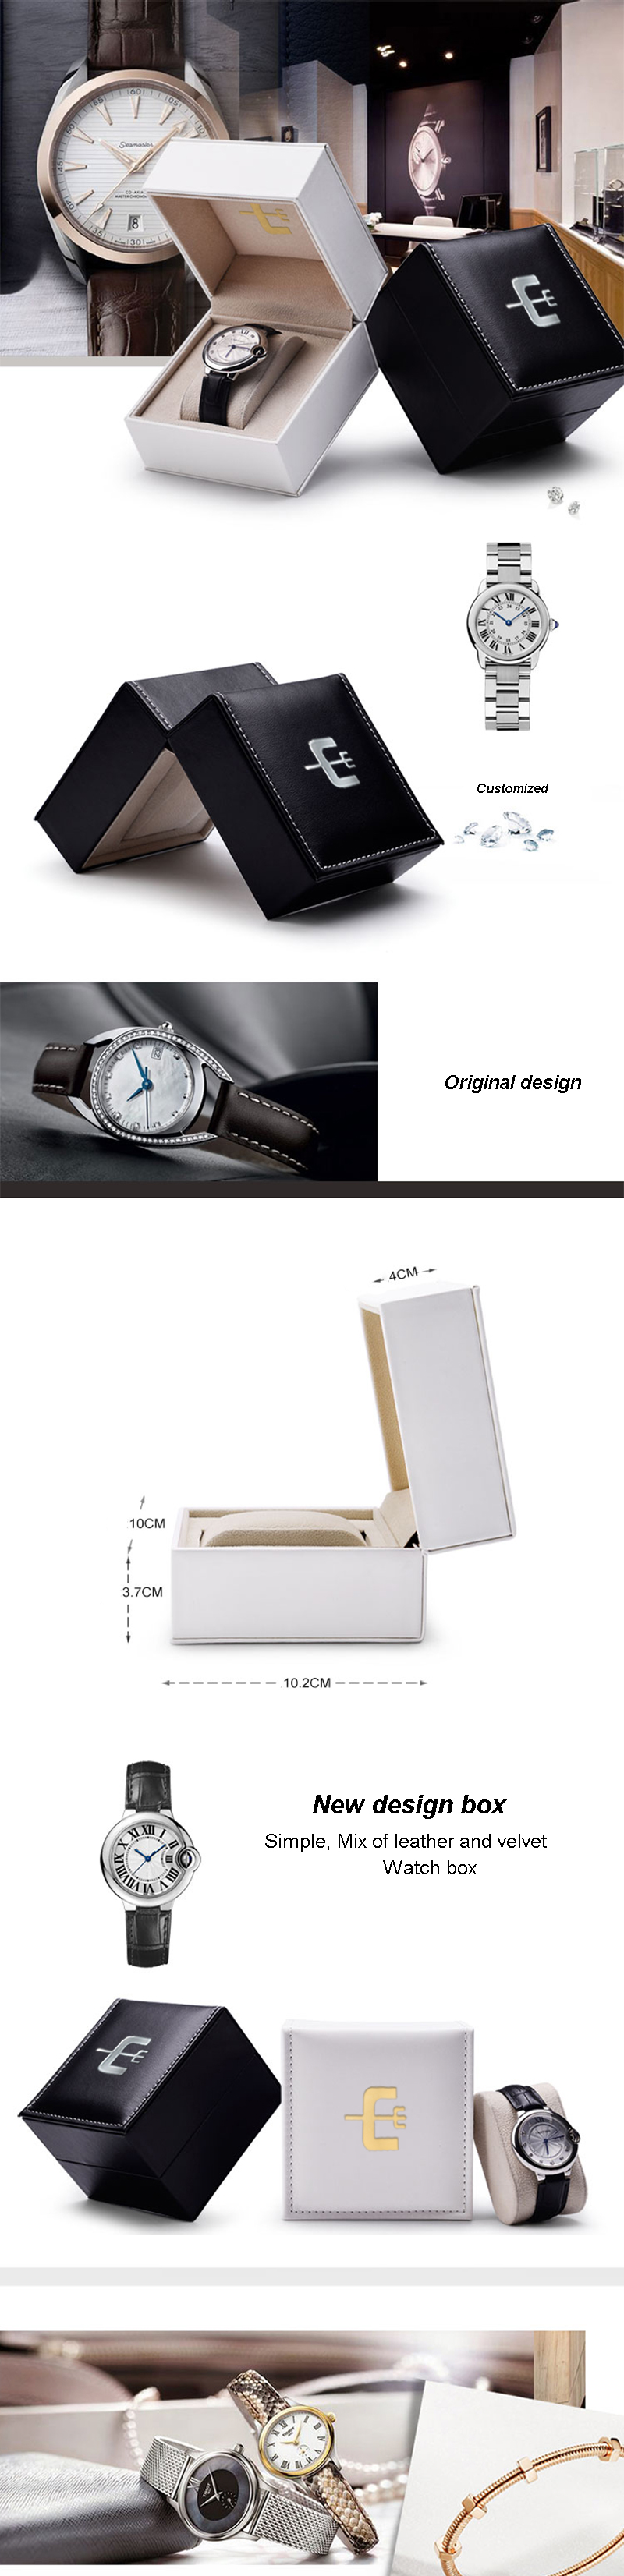 Custom watch packaging